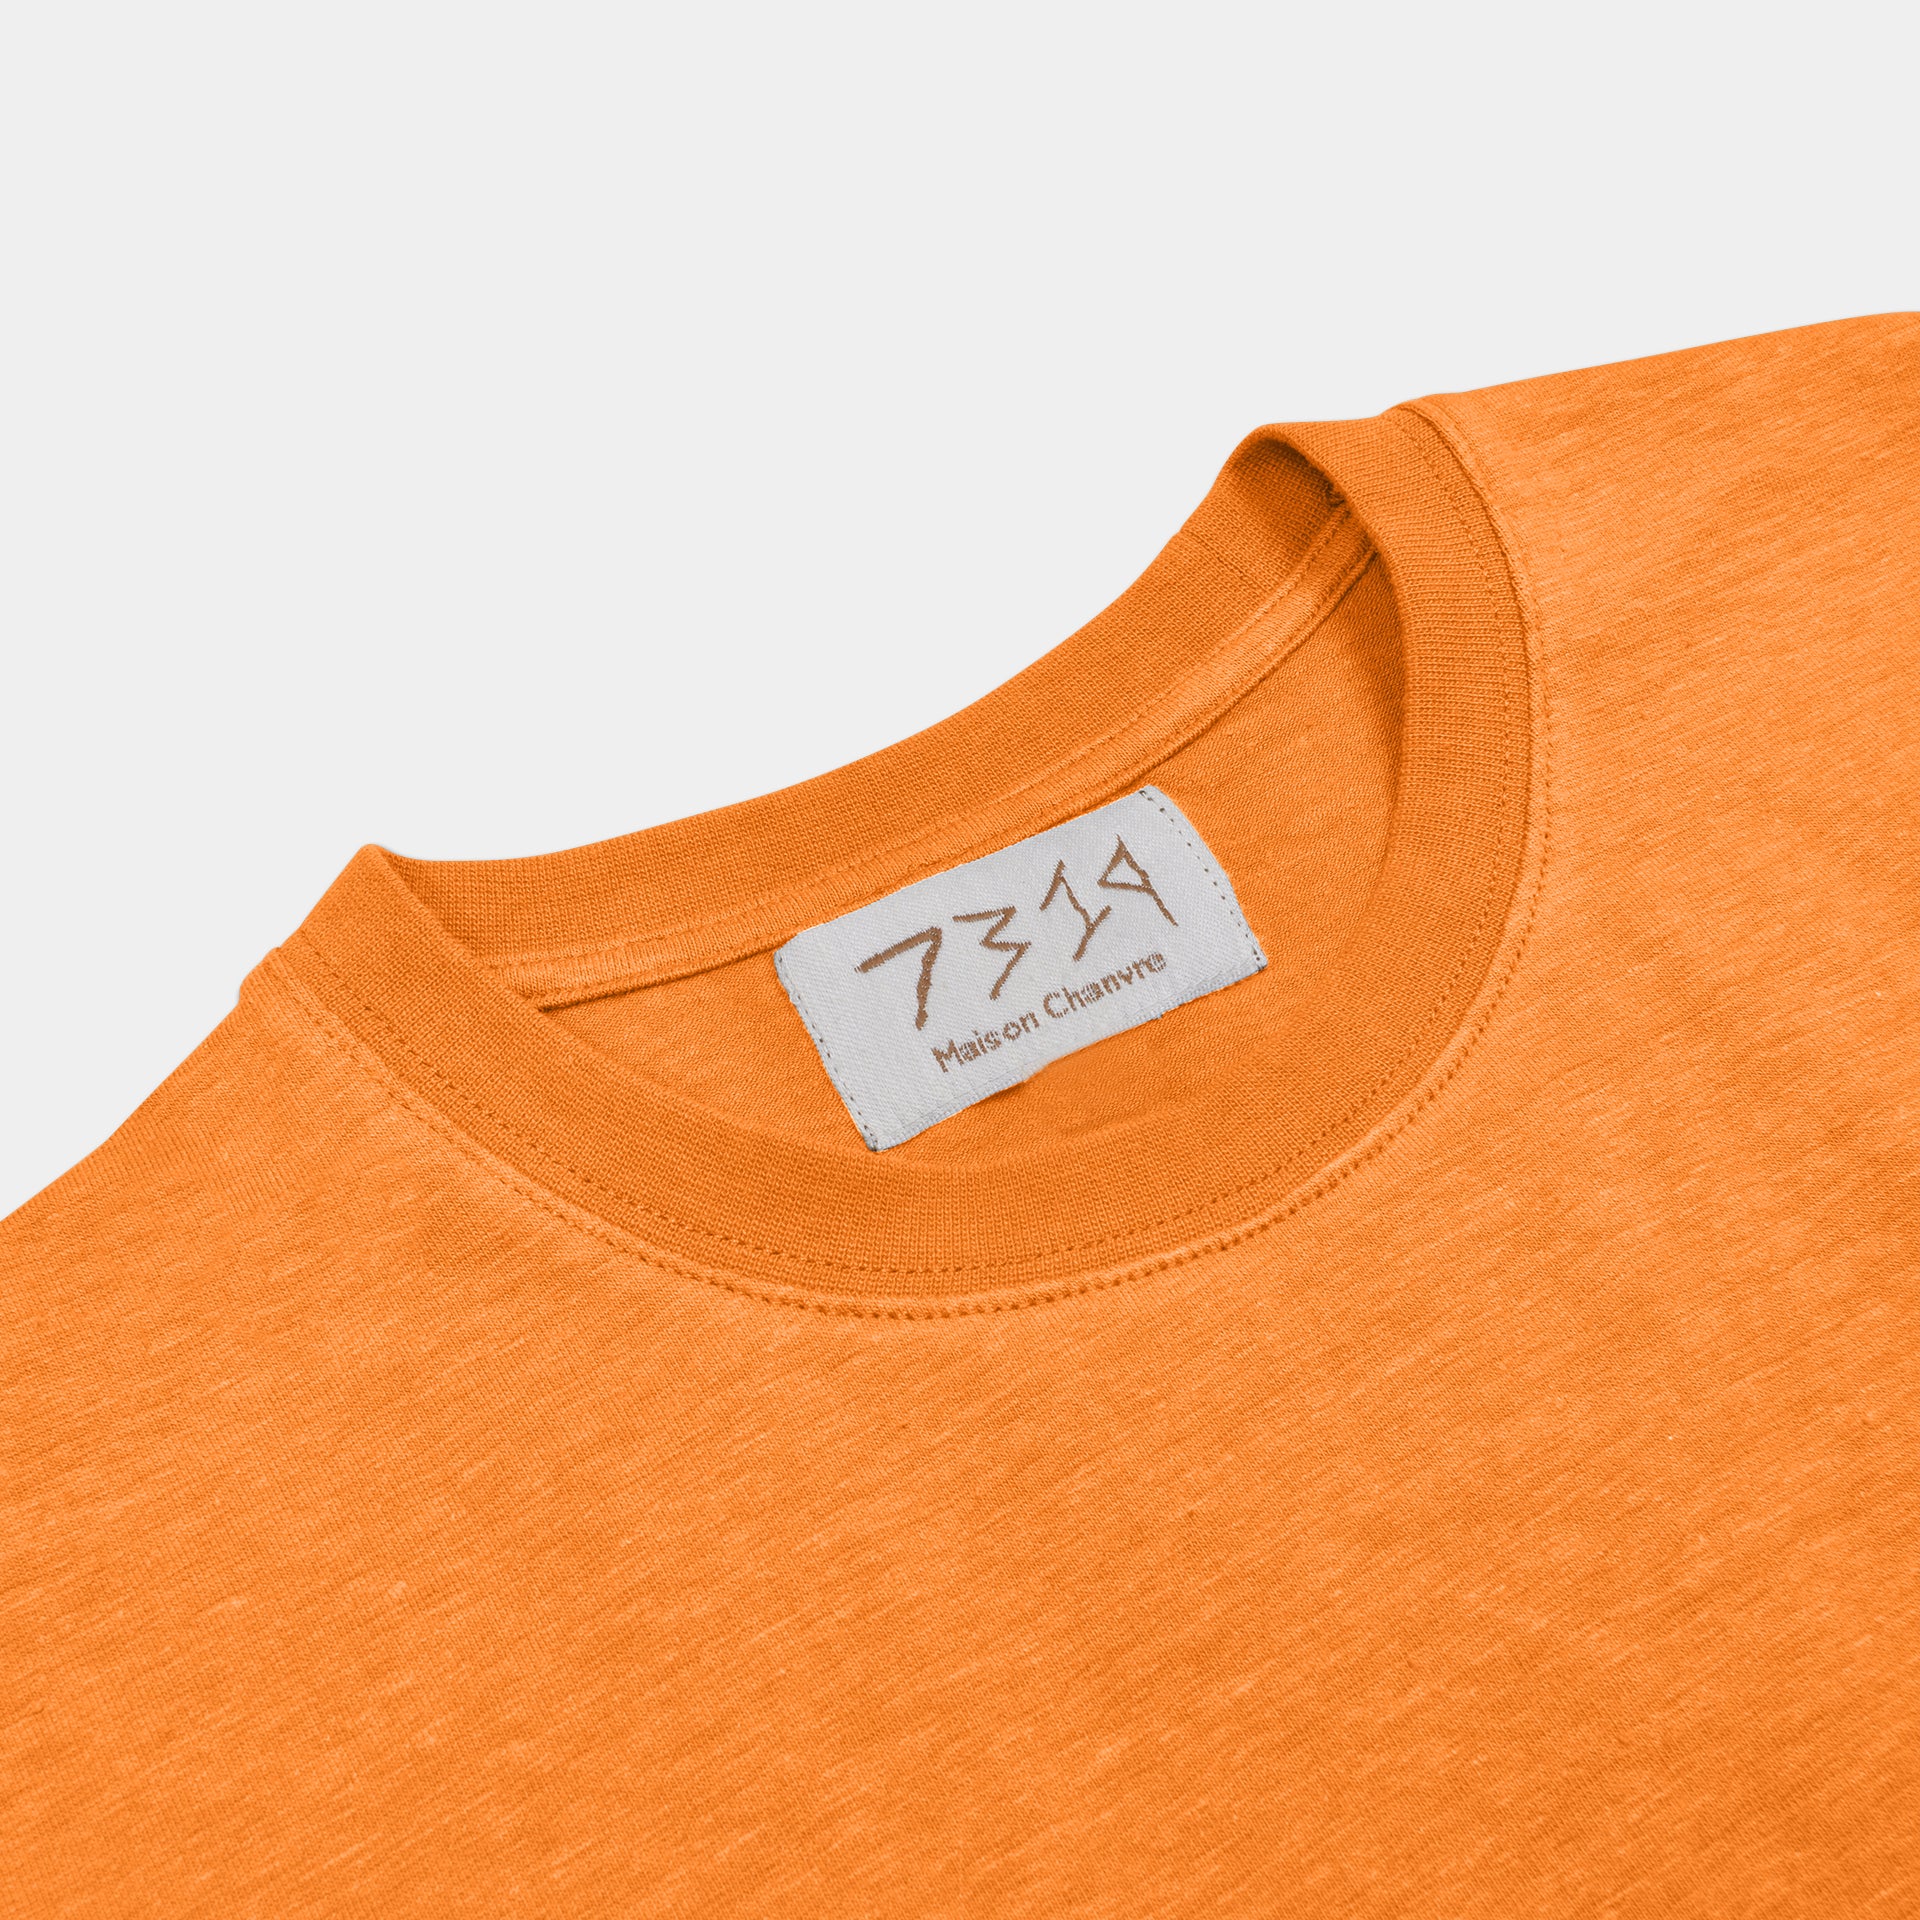 Saffron Orange 7319 t-shirt front shot with label, flipped